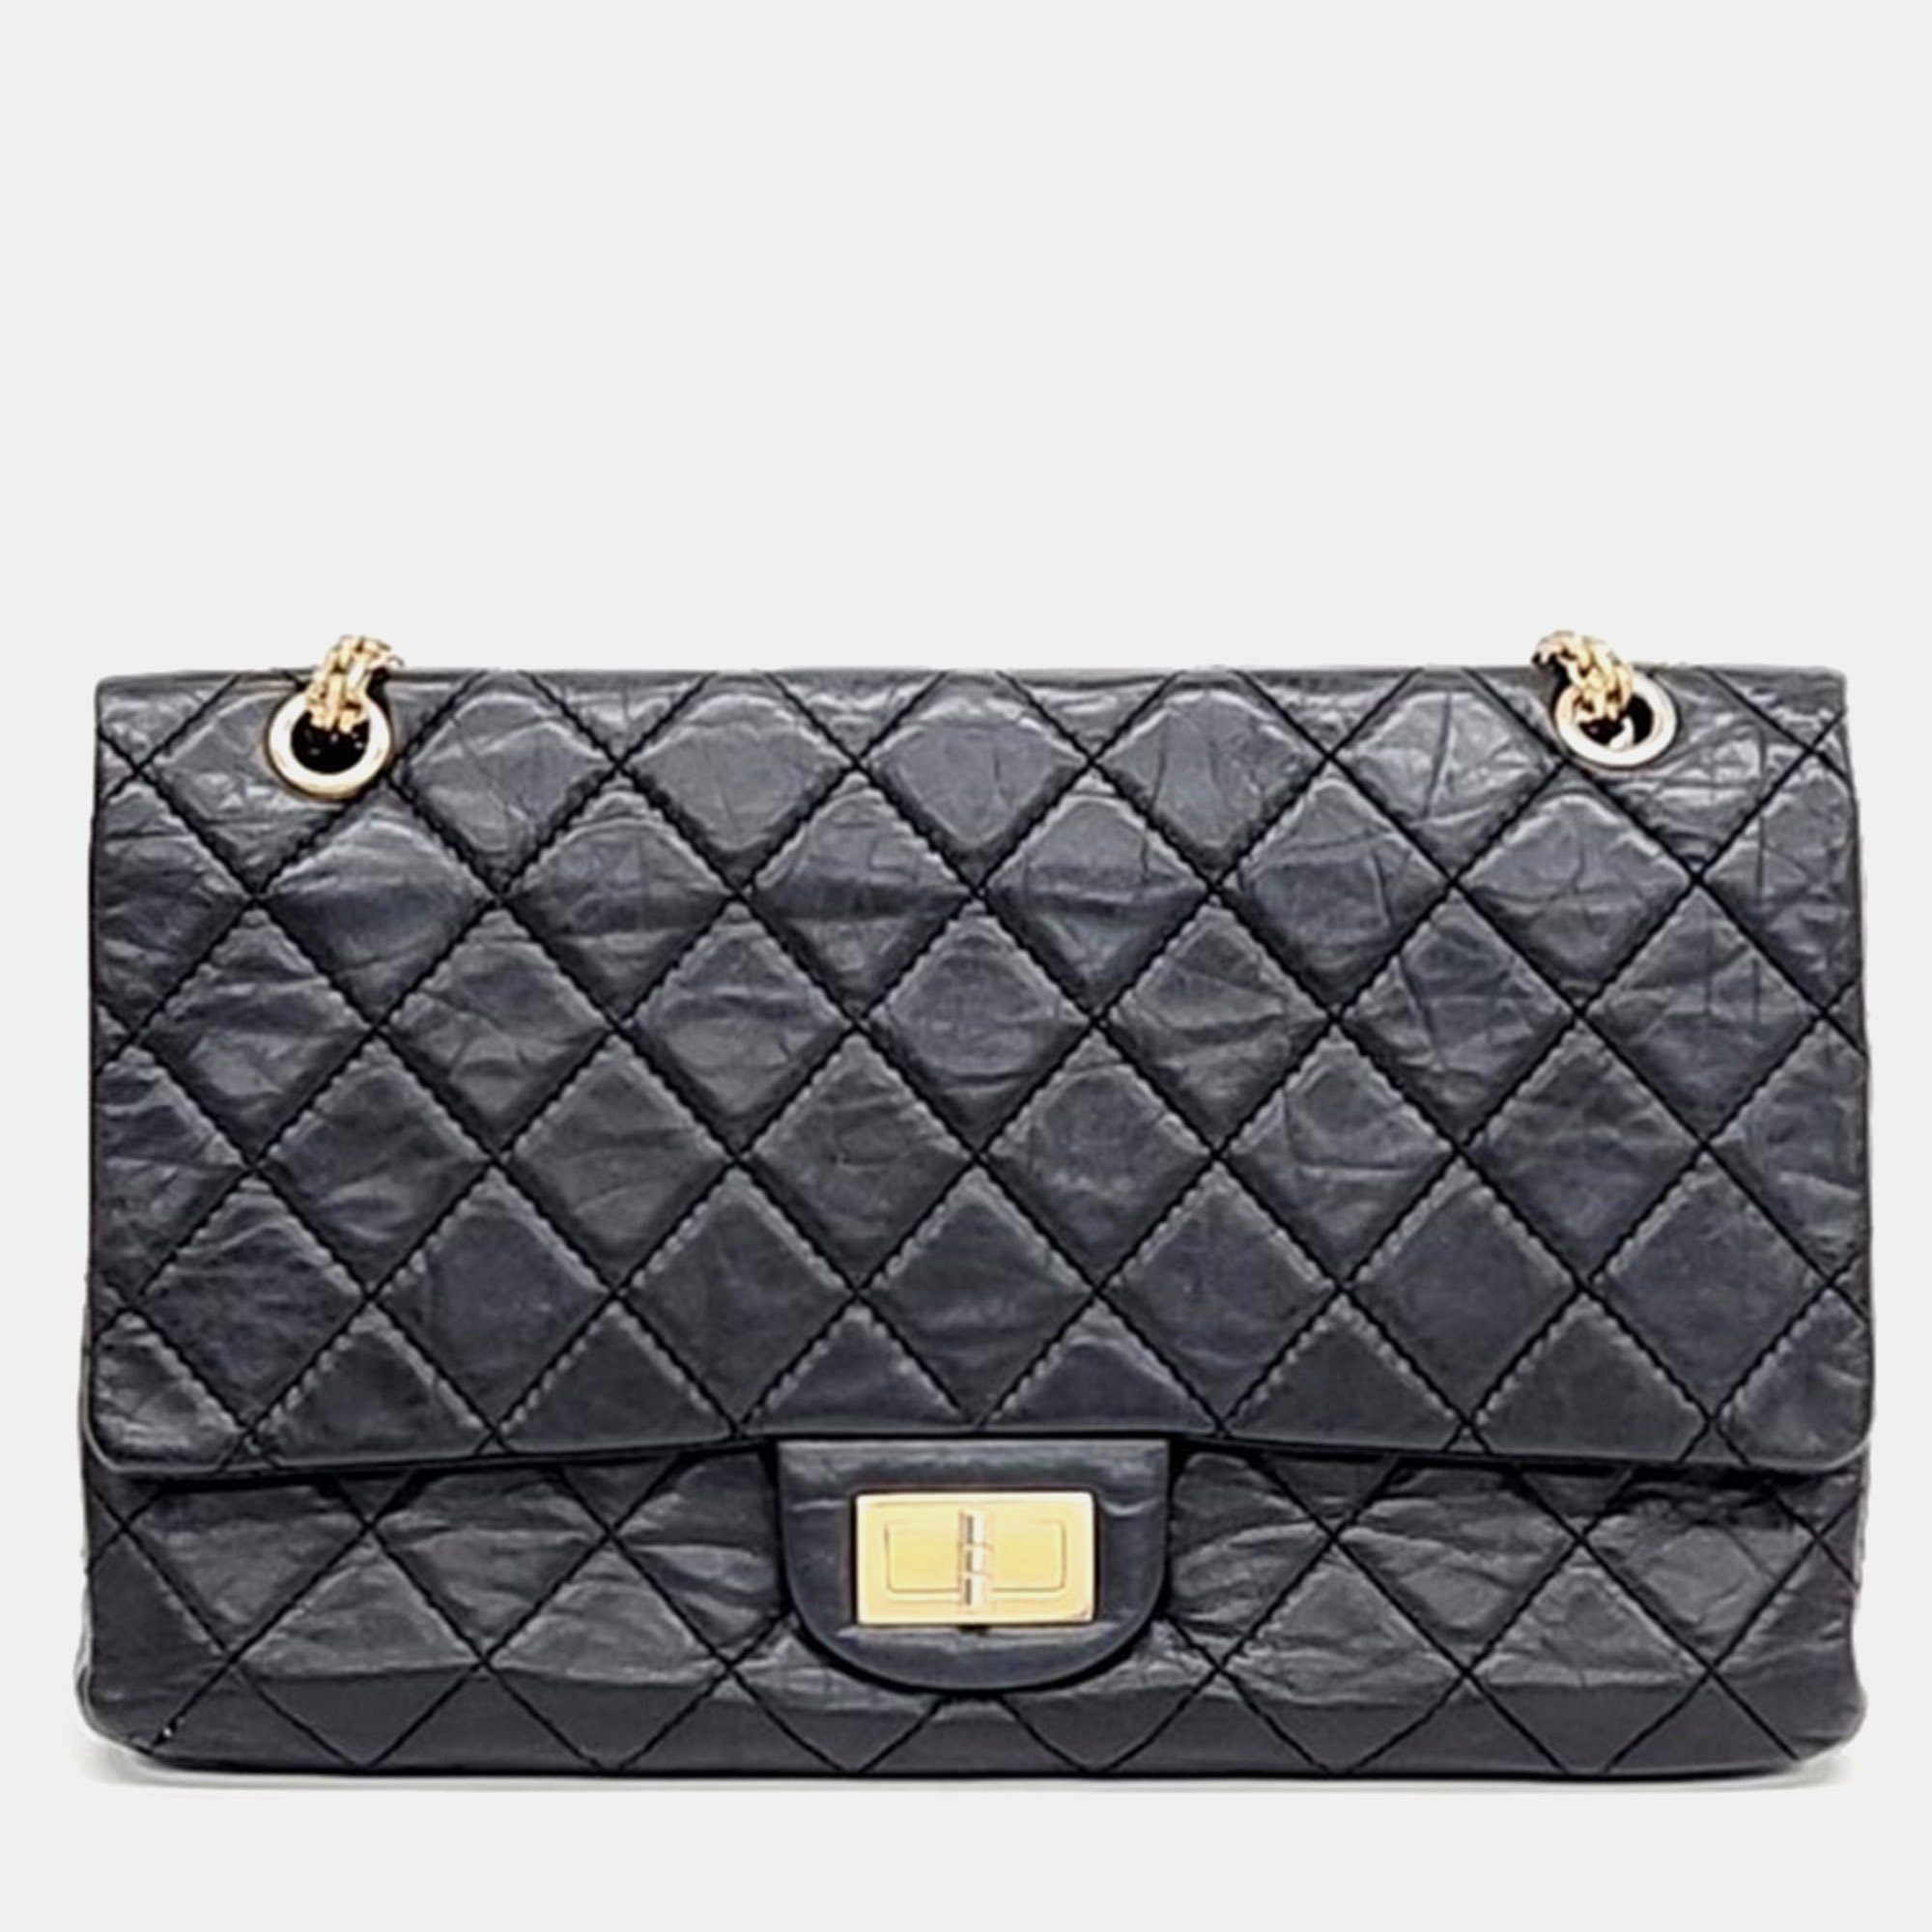 Chanel black leather reissue 2.55 shoulder bag